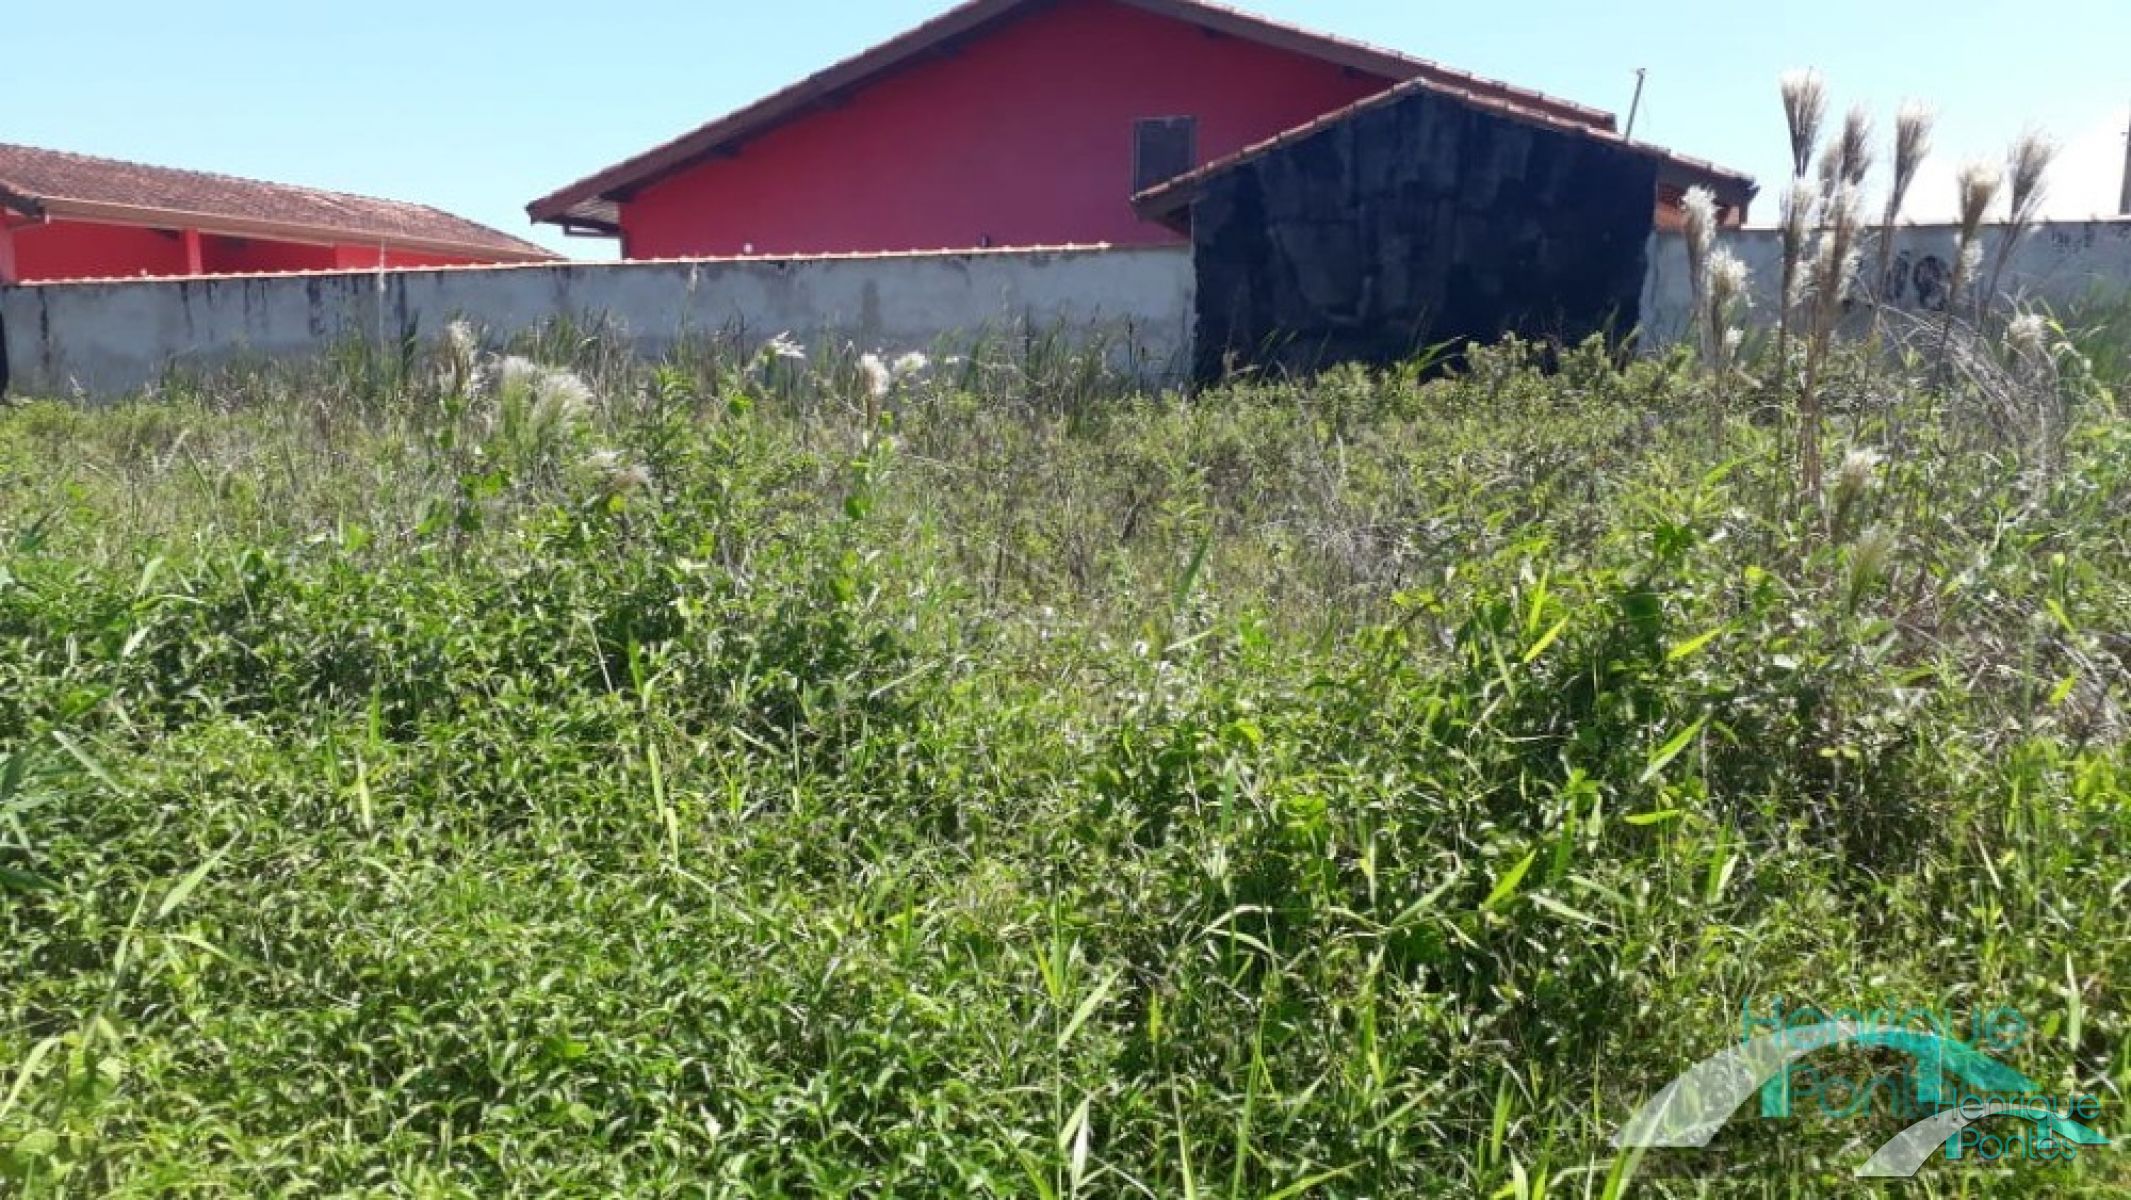 Terreno em Peruíbe para venda